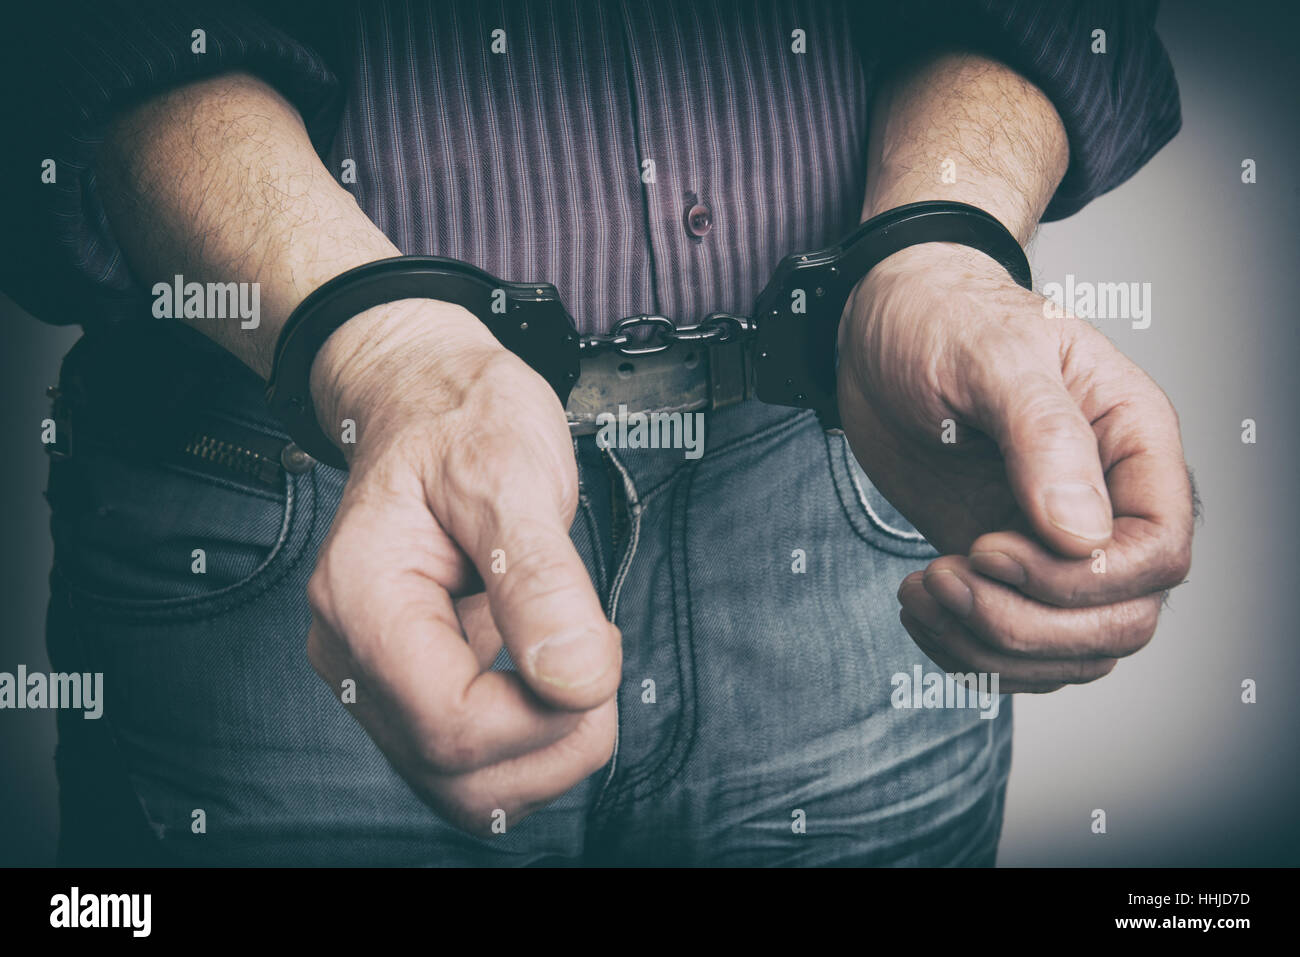 männliche Hände mit Handschellen gefesselt Nahaufnahme. Kriminalität-Konzept Stockfoto